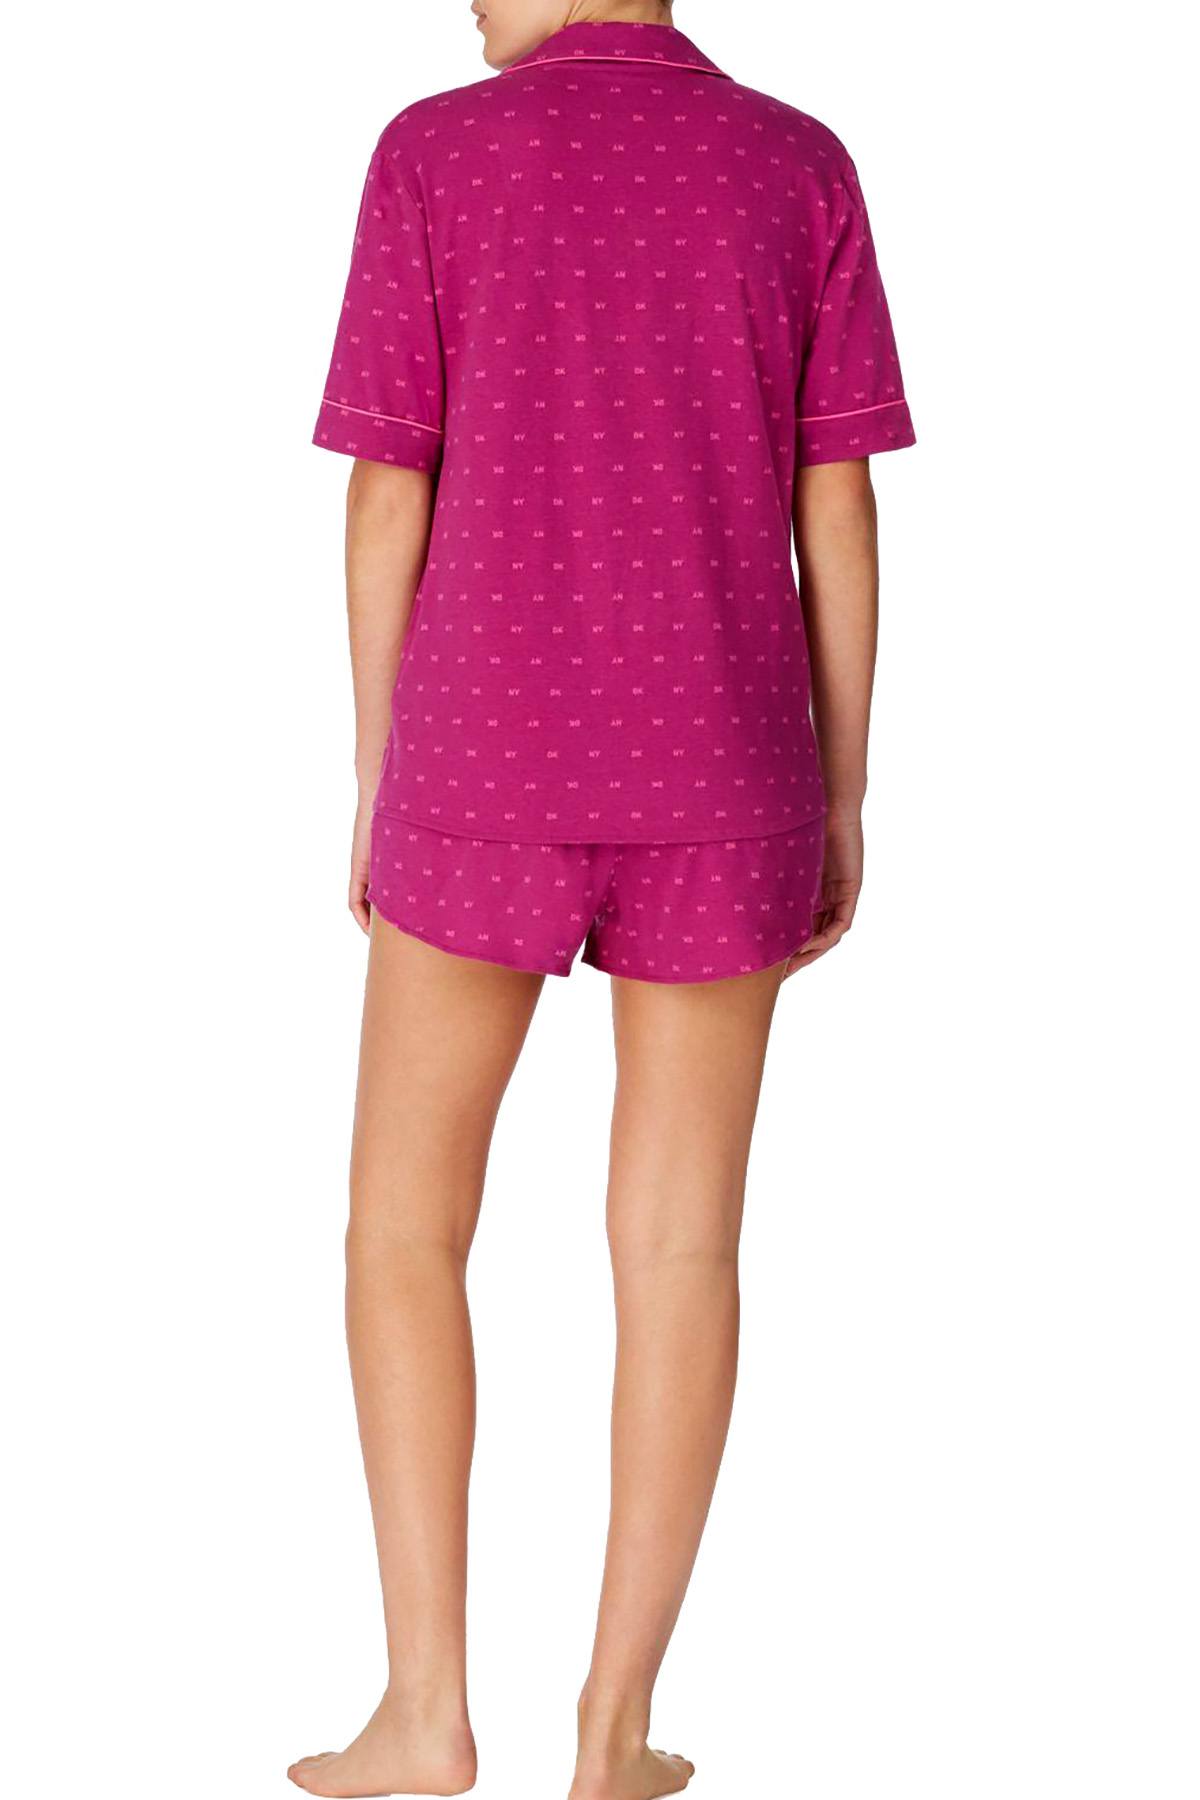 DKNY Berry Logo Notch Collar Top / Boxer Short Pajama Set